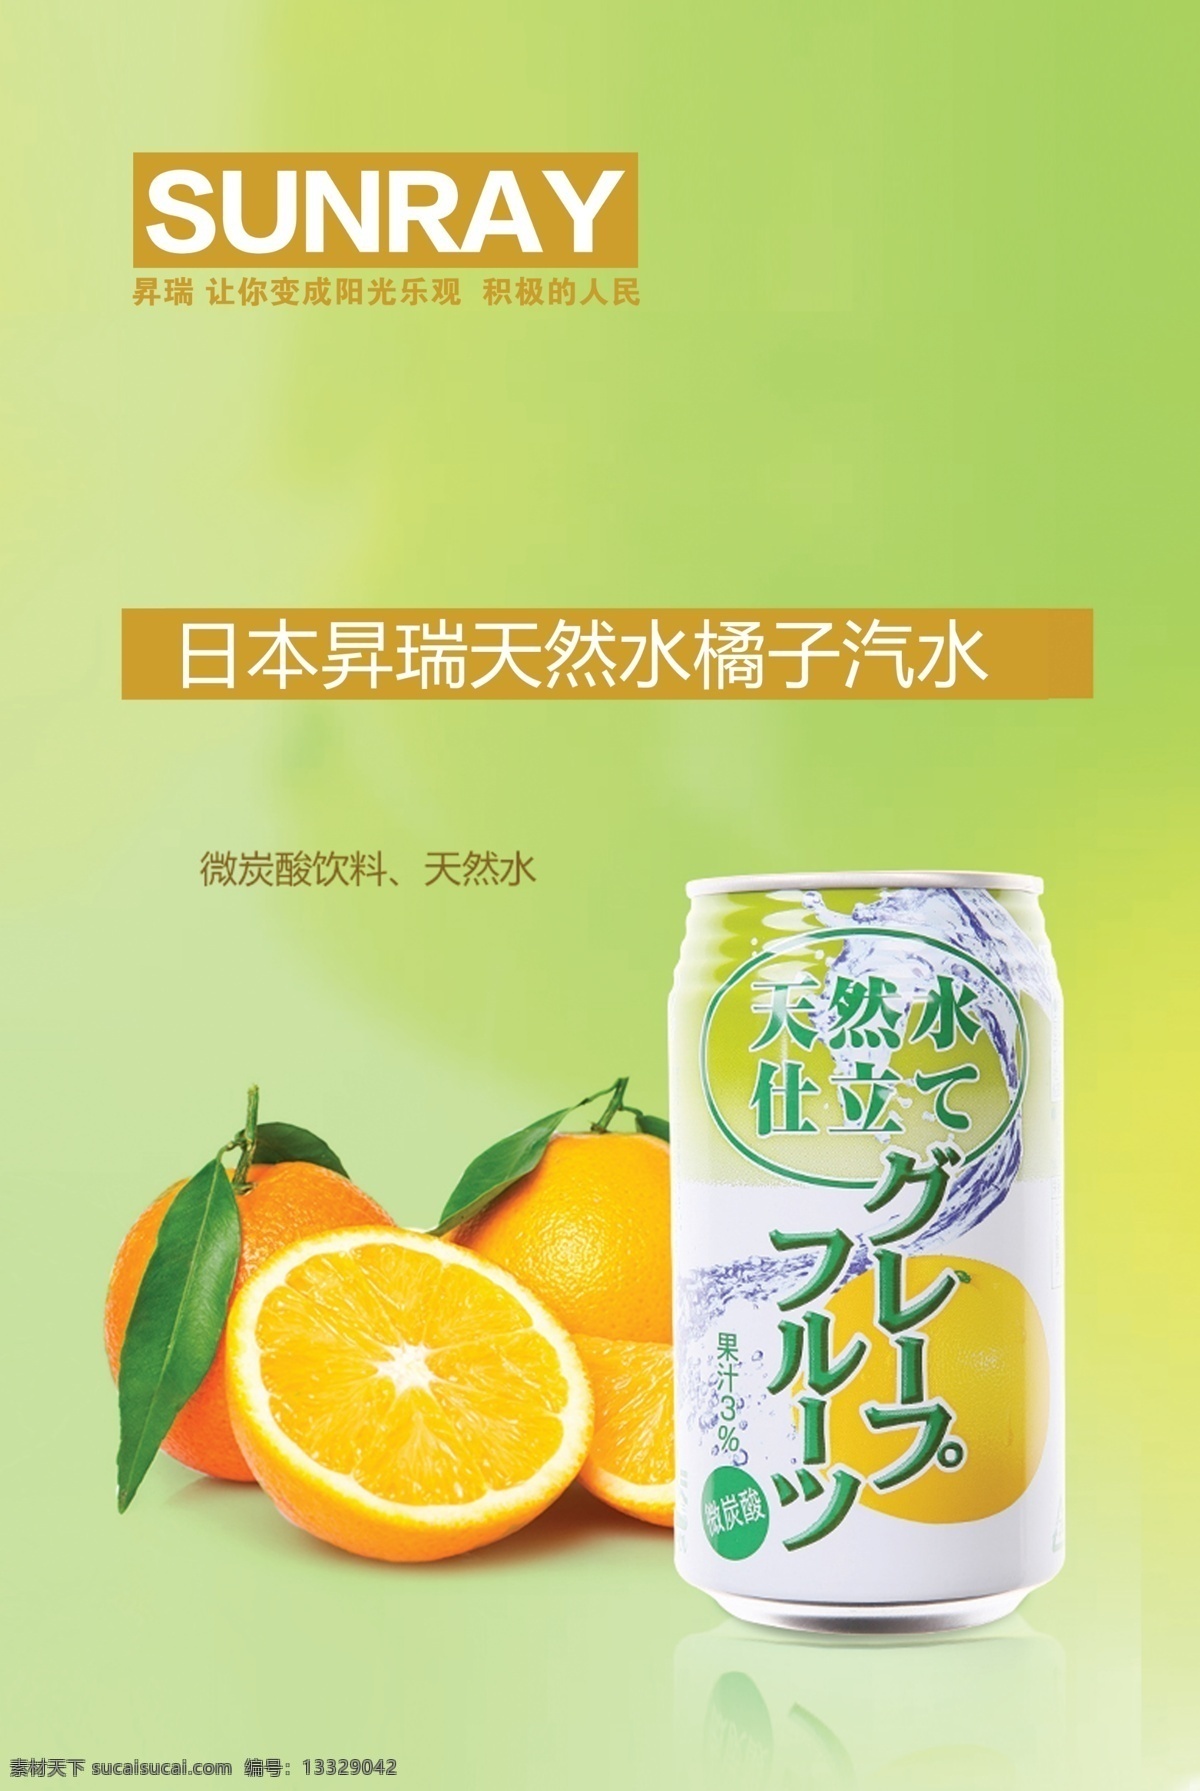 汽水海报 进口汽水 橙汁 海外进口 海外购 进口货物 进口食品 海外购物 果粒橙